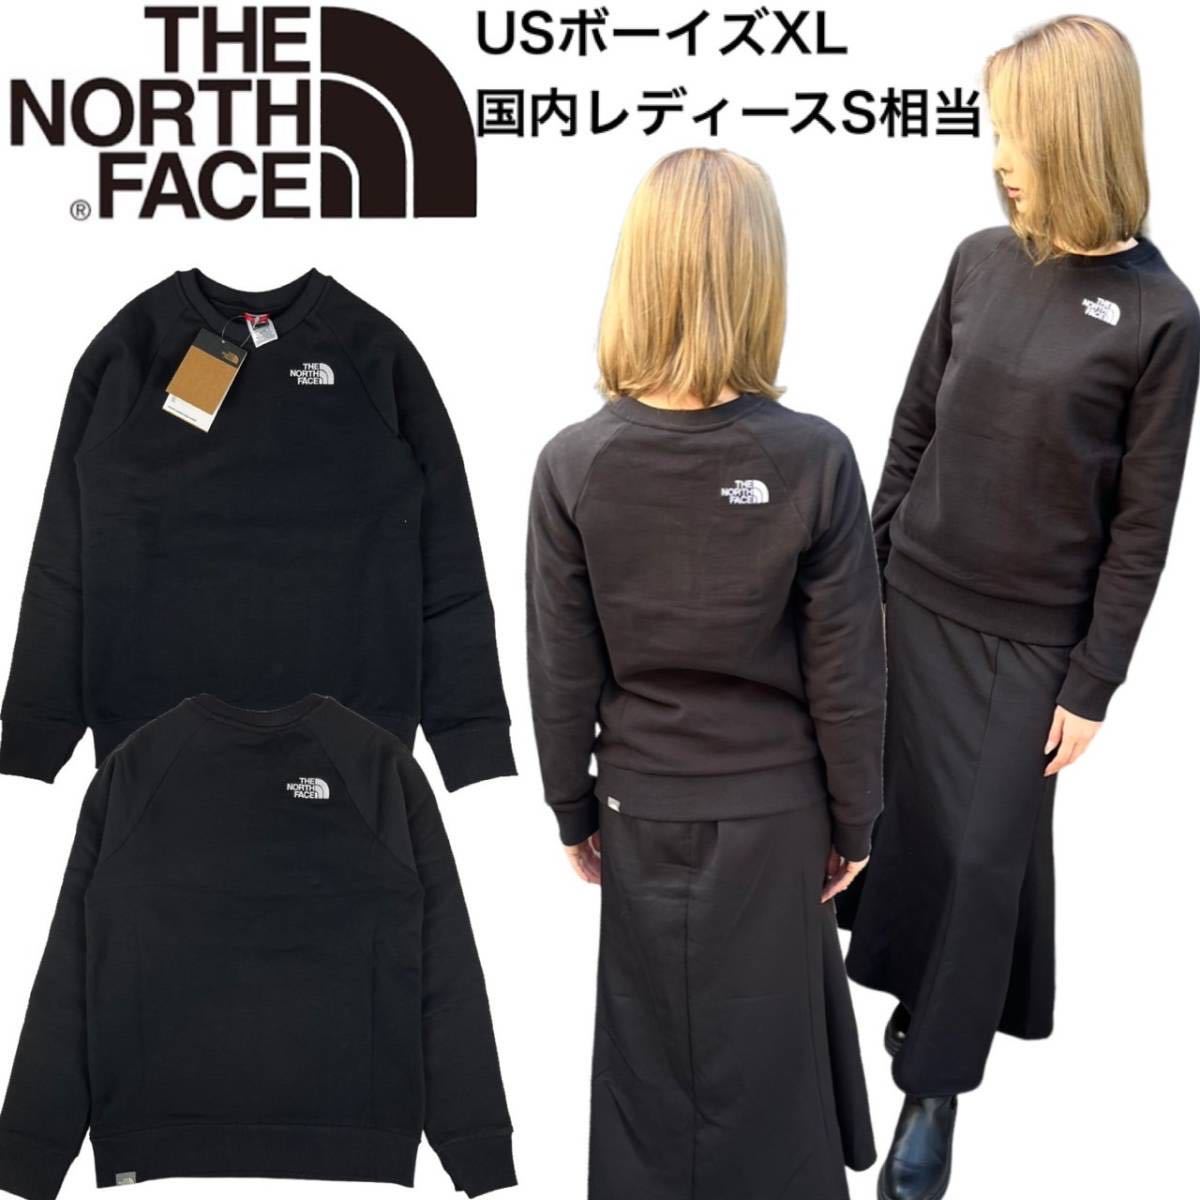 ノースフェイス トレーナー ティーン ボーイズ レディース NF0A7X5A ブラック Sサイズ(海外XL) THE NORTH FACE TEEN EVERYDAY CREW 新品